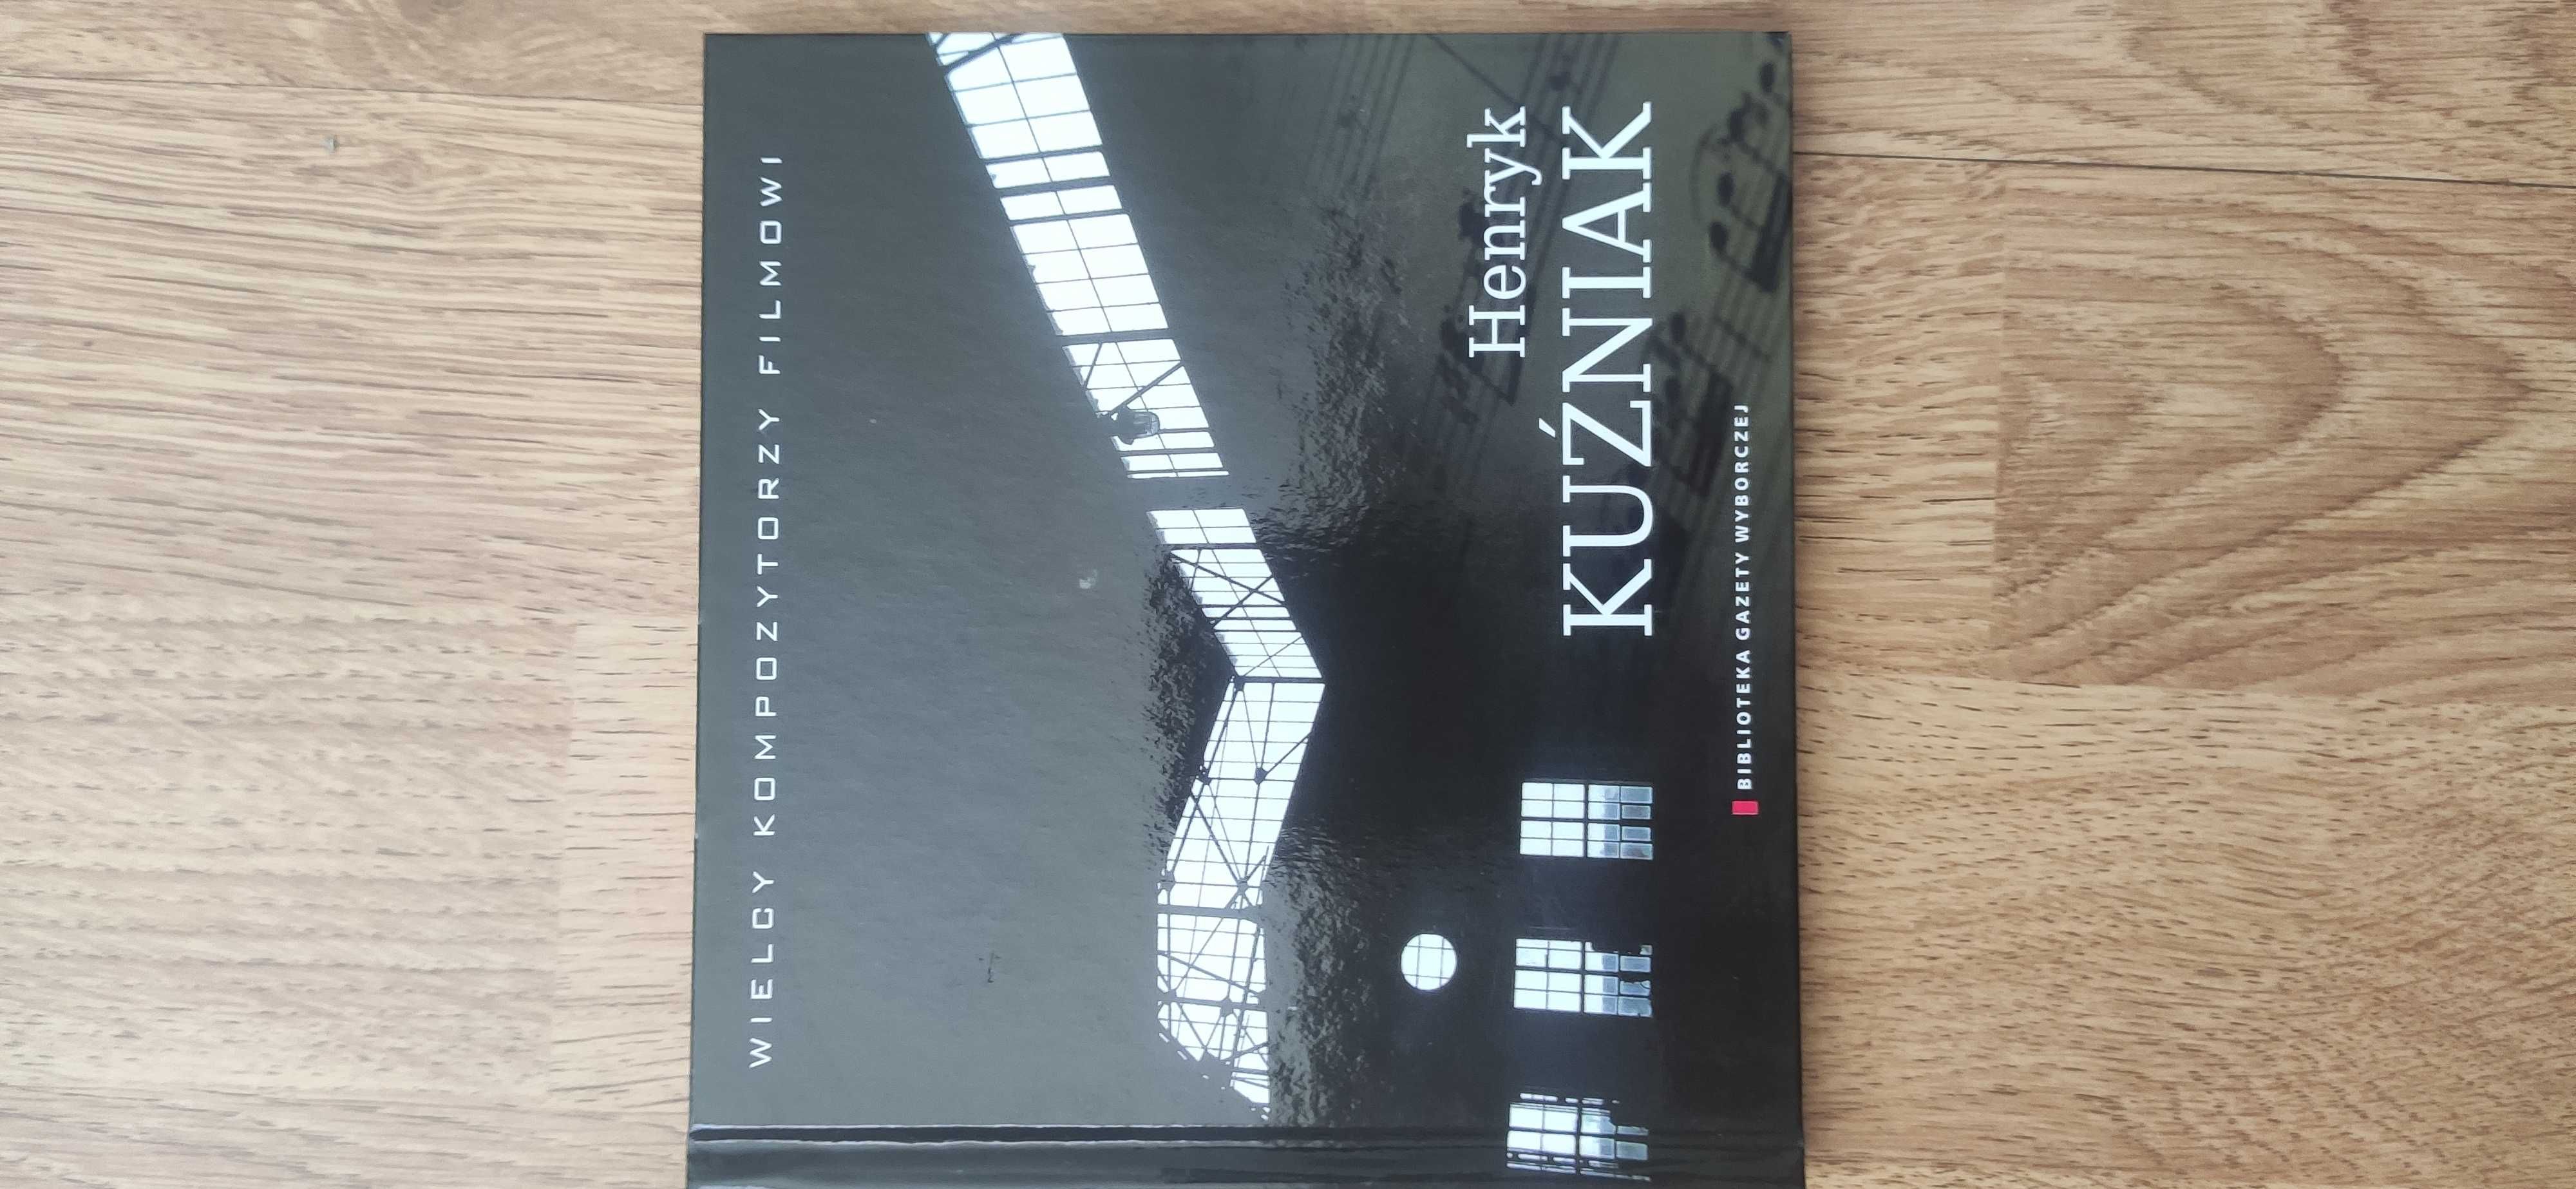 Sprzedam płytę Henryka Kuzniaka z serii Wielcy kompozytorzy filmowi